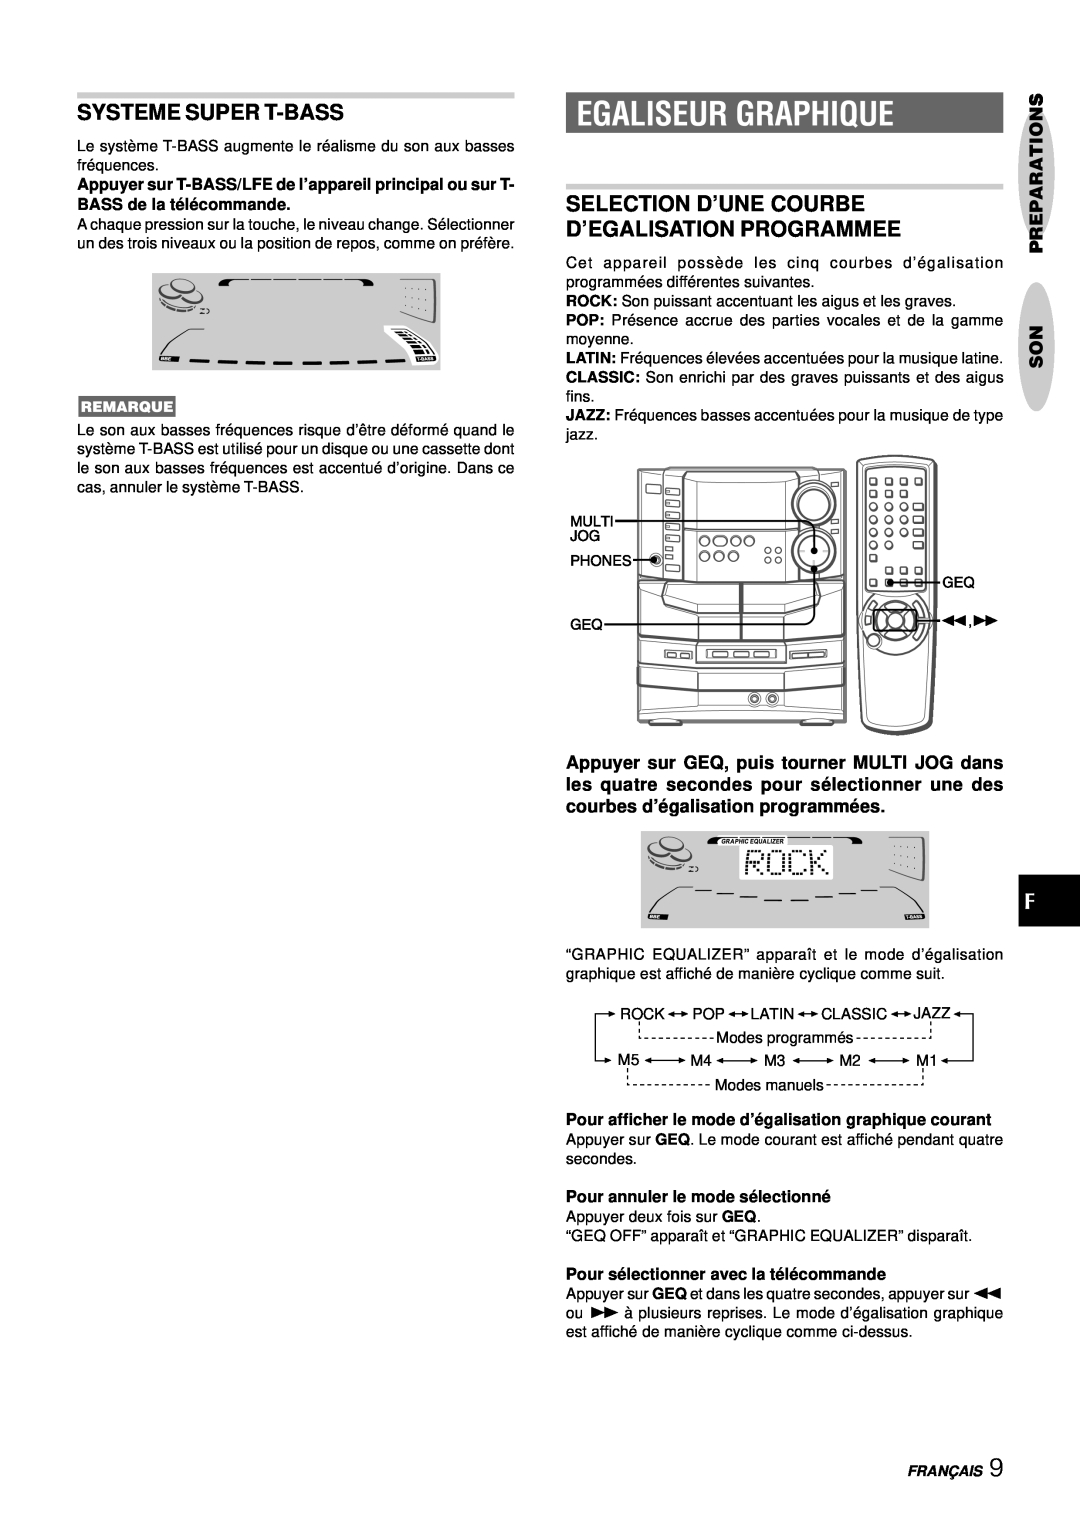 Aiwa NSX-DS8 Egaliseur Graphique, Systeme Super T-Bass, Selection D’Une Courbe, D’Egalisation Programmee, Preparations 